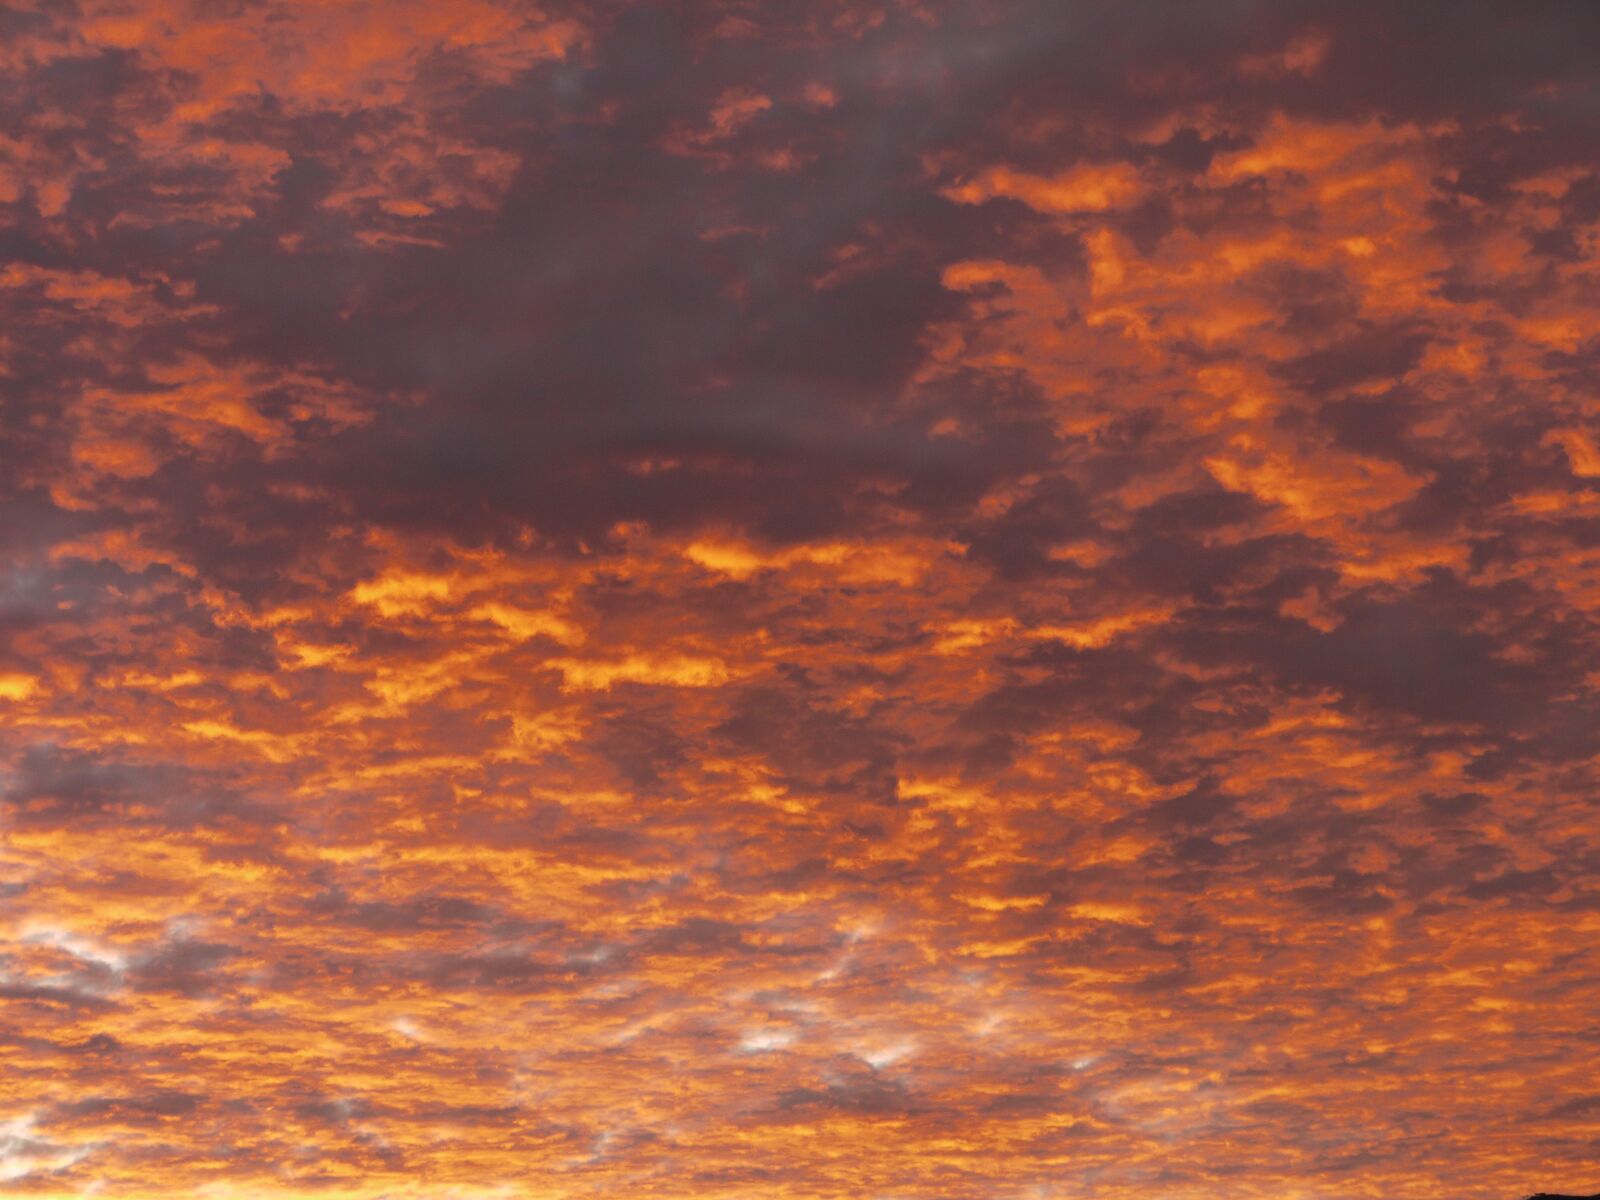 Panasonic Lumix DMC-GF1 sample photo. Sky, clouds, sunset photography